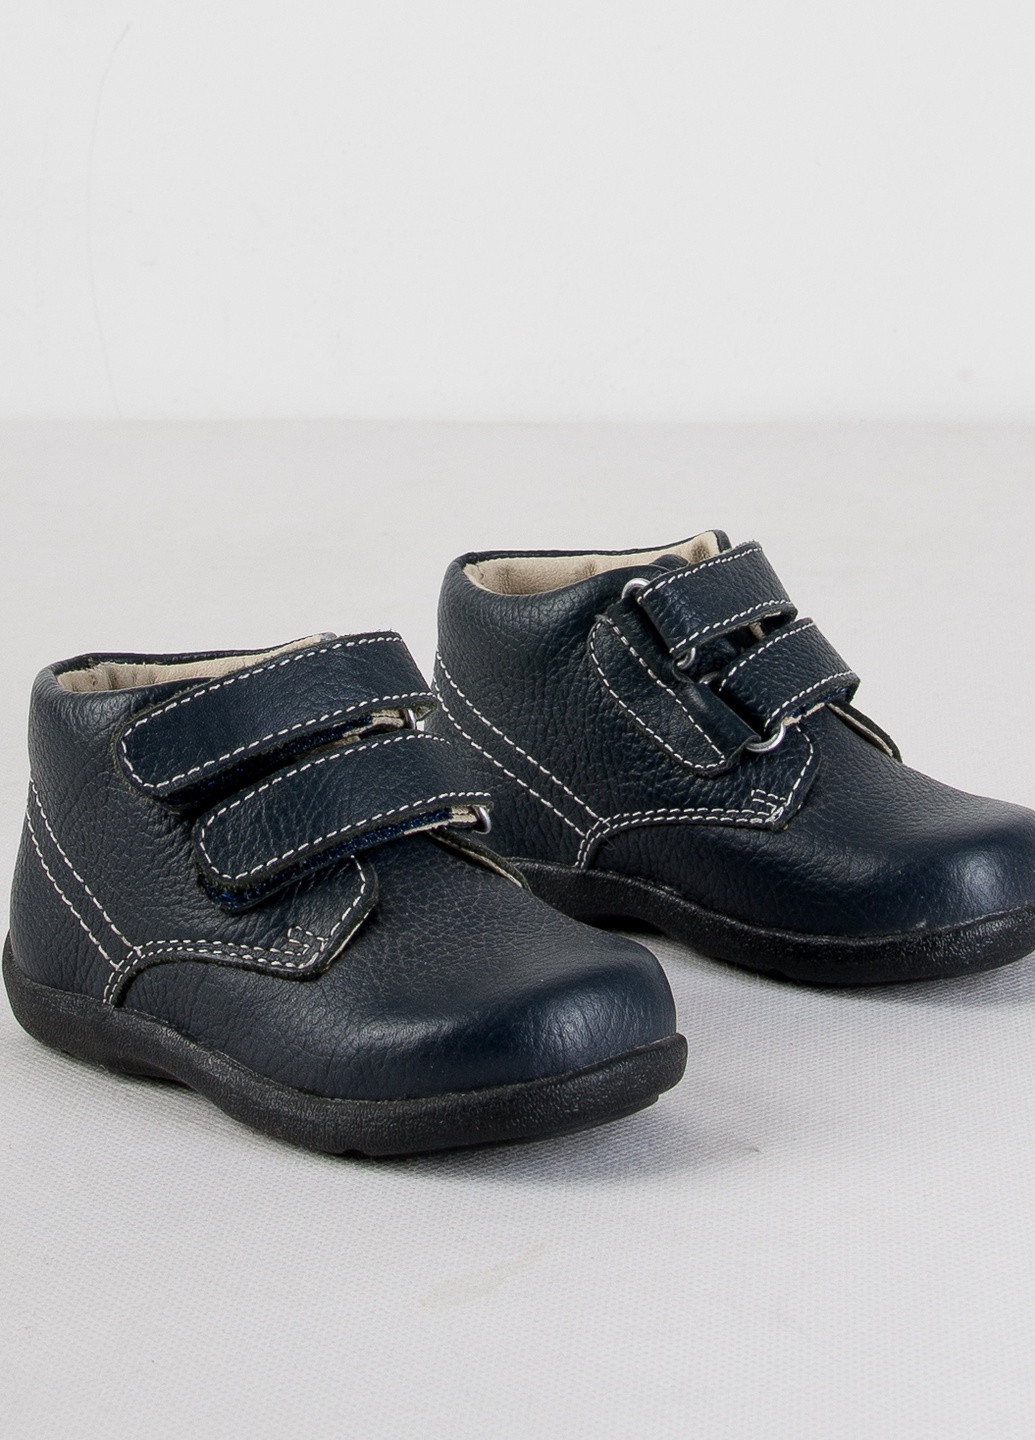 Черные ботинки Umi